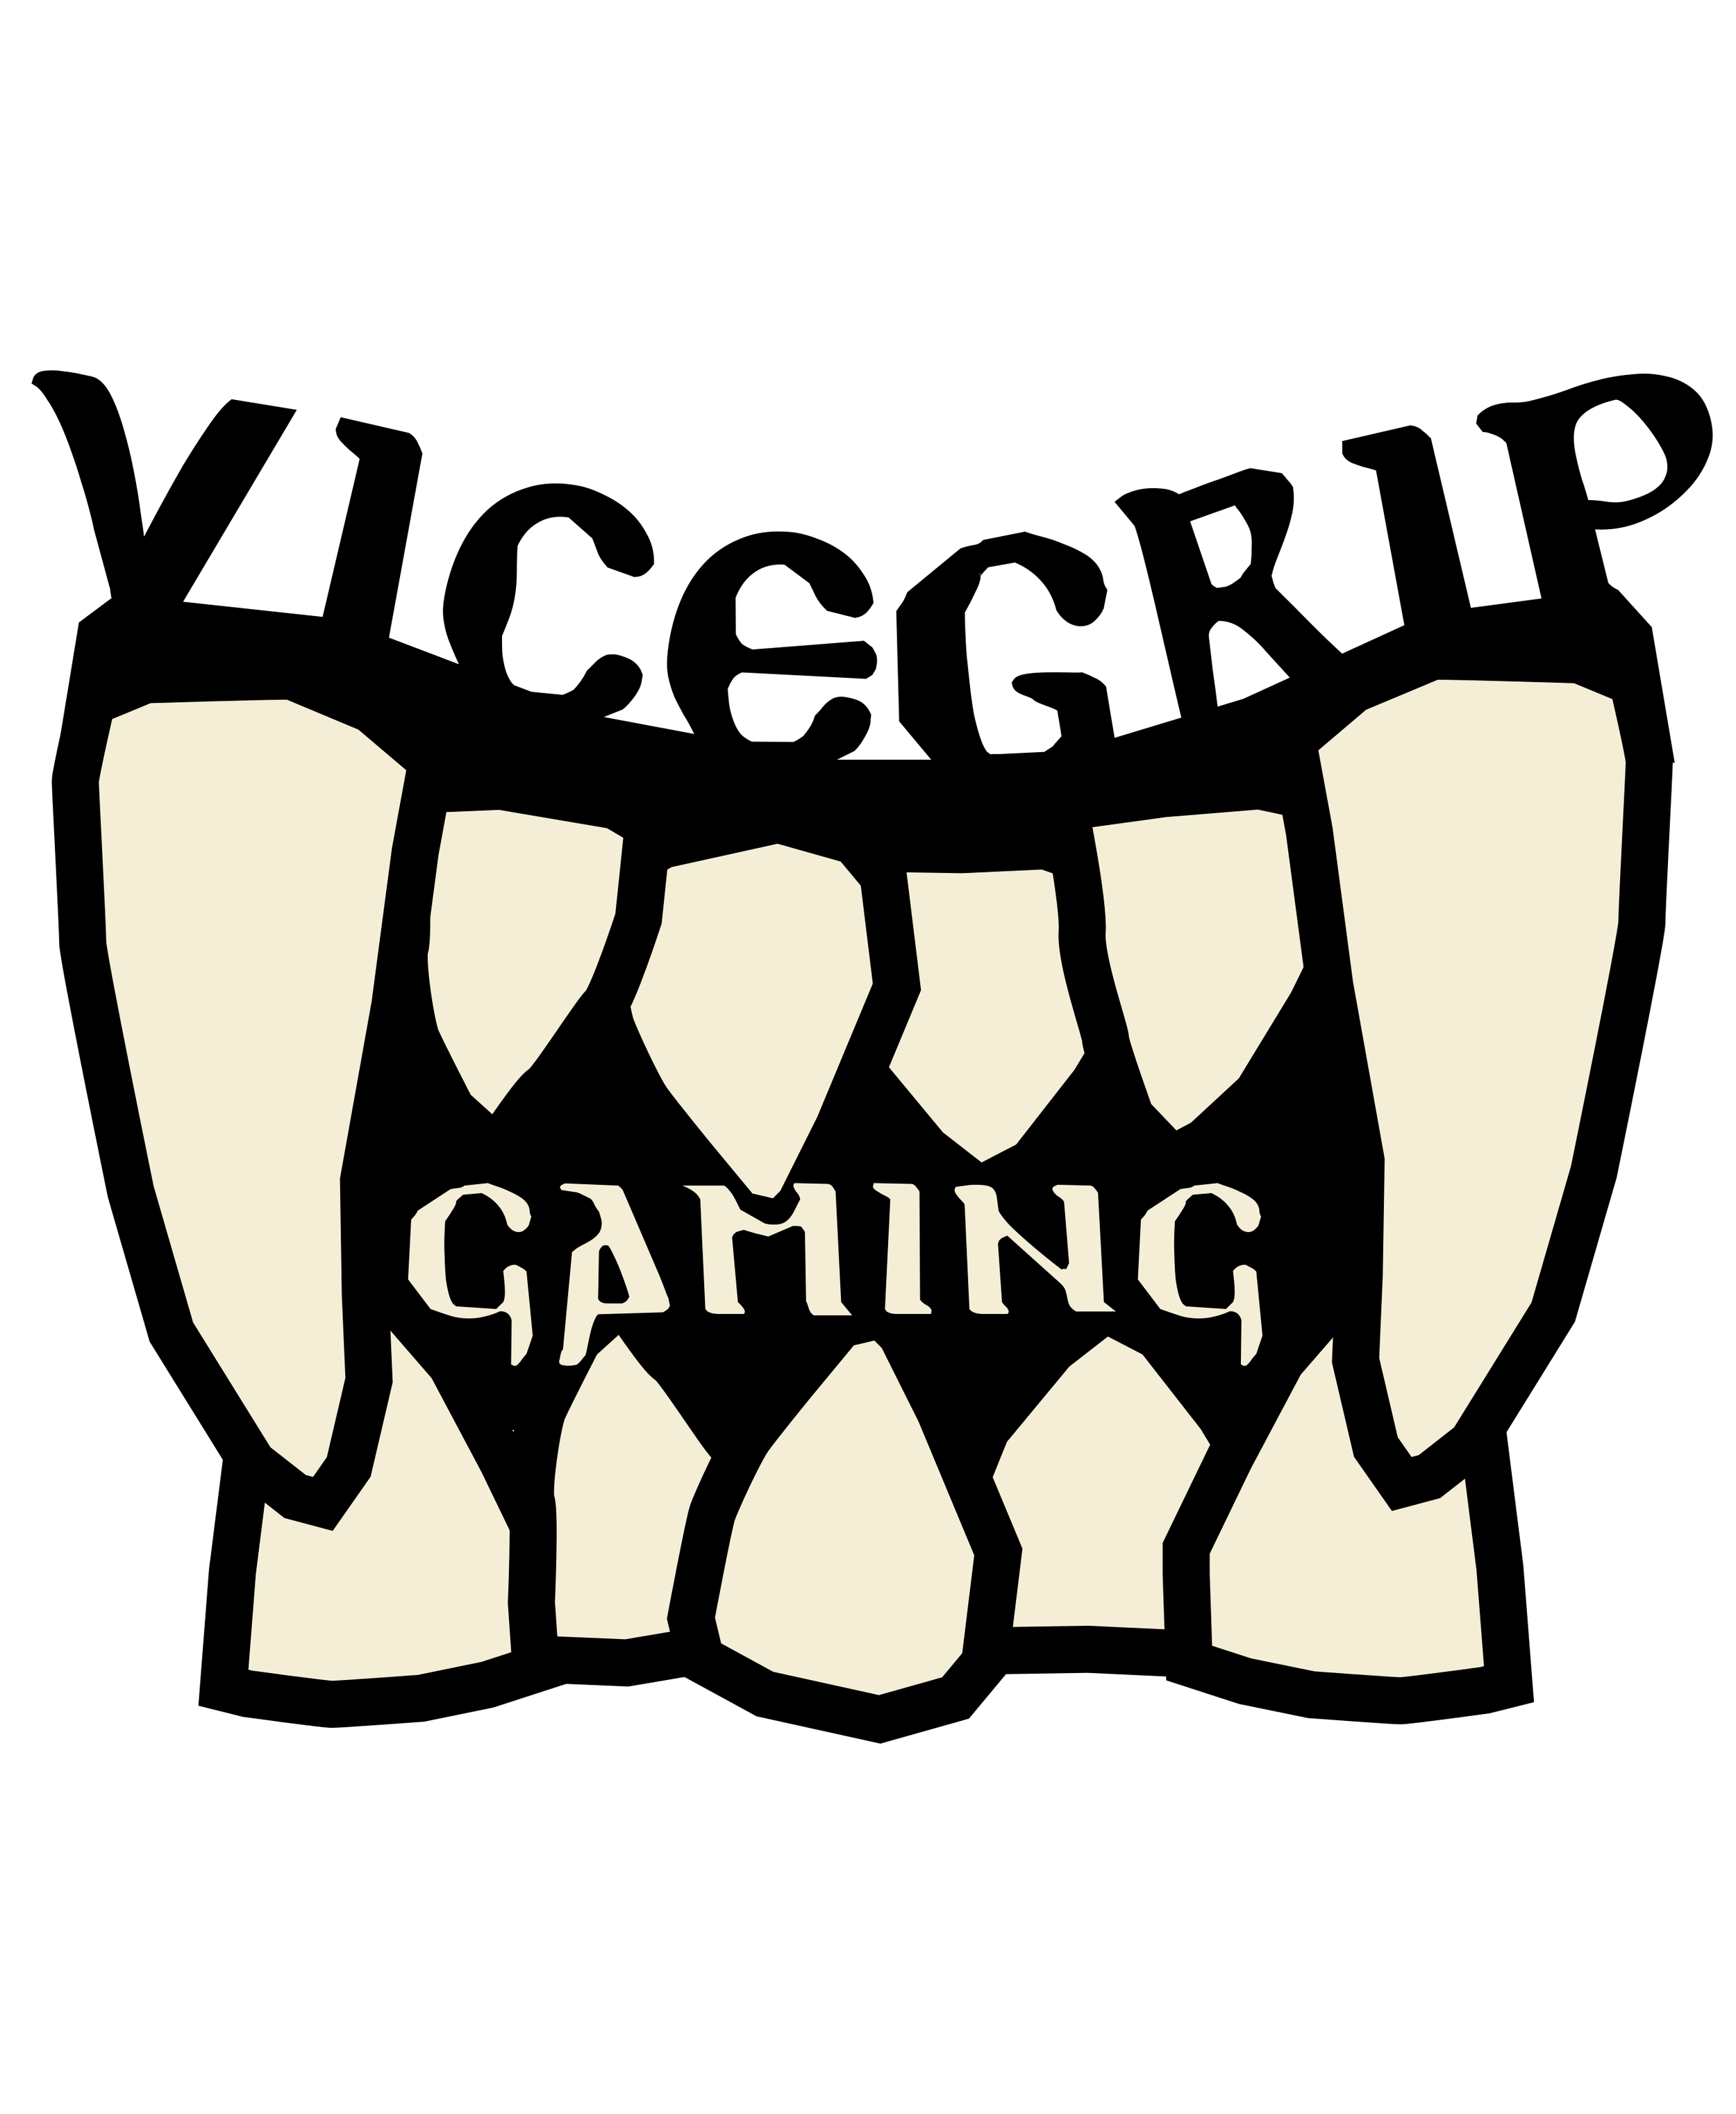 ViceGrip Gaming.png